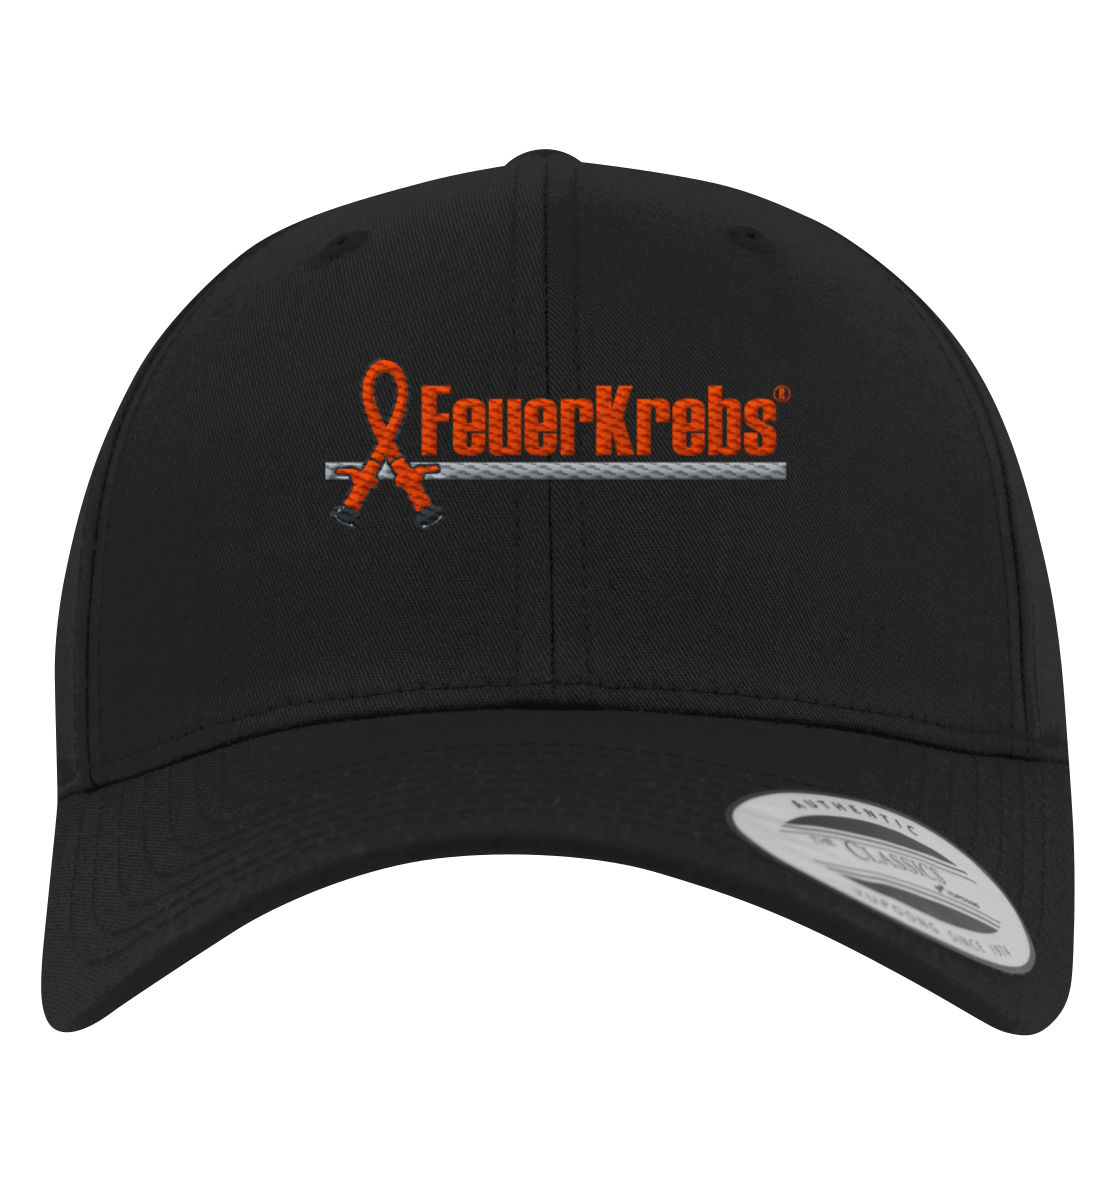 FeuerKrebs® Basecap - FeuerKrebs-Logo - Premium Baseball Cap